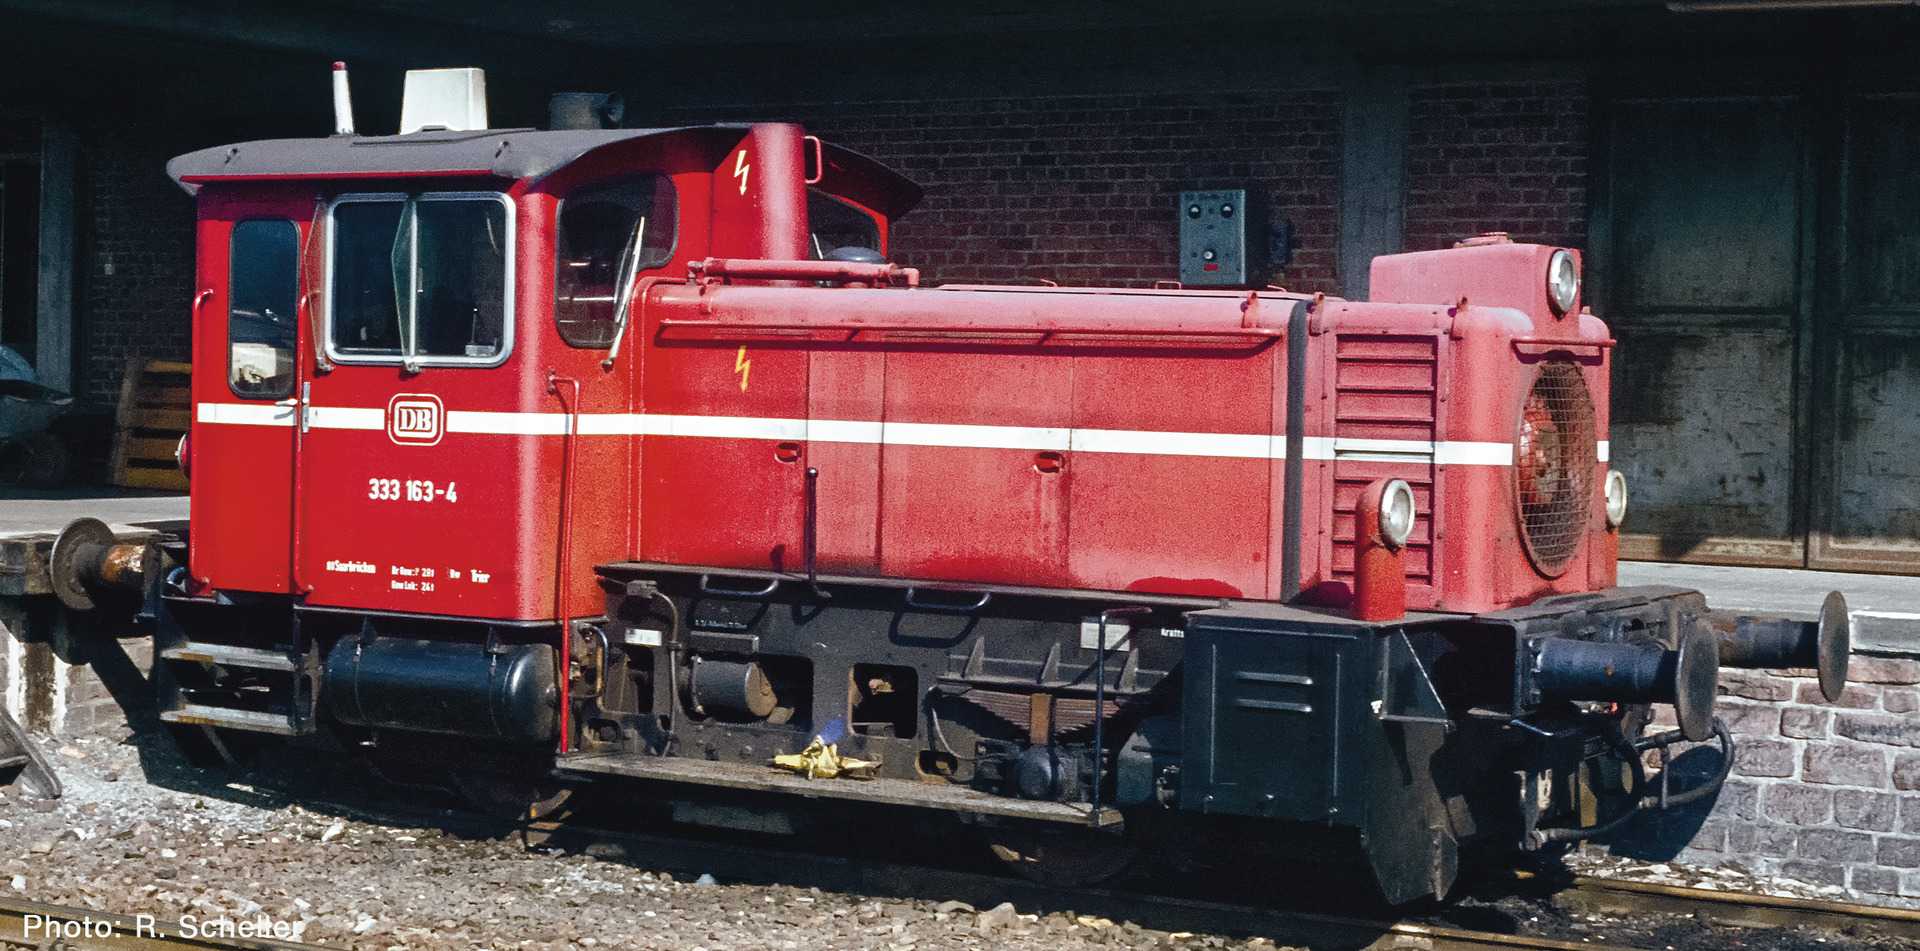  Roco-Fleischmann Locomotive diesel classe 333, DB-H0 - Trains miniatu